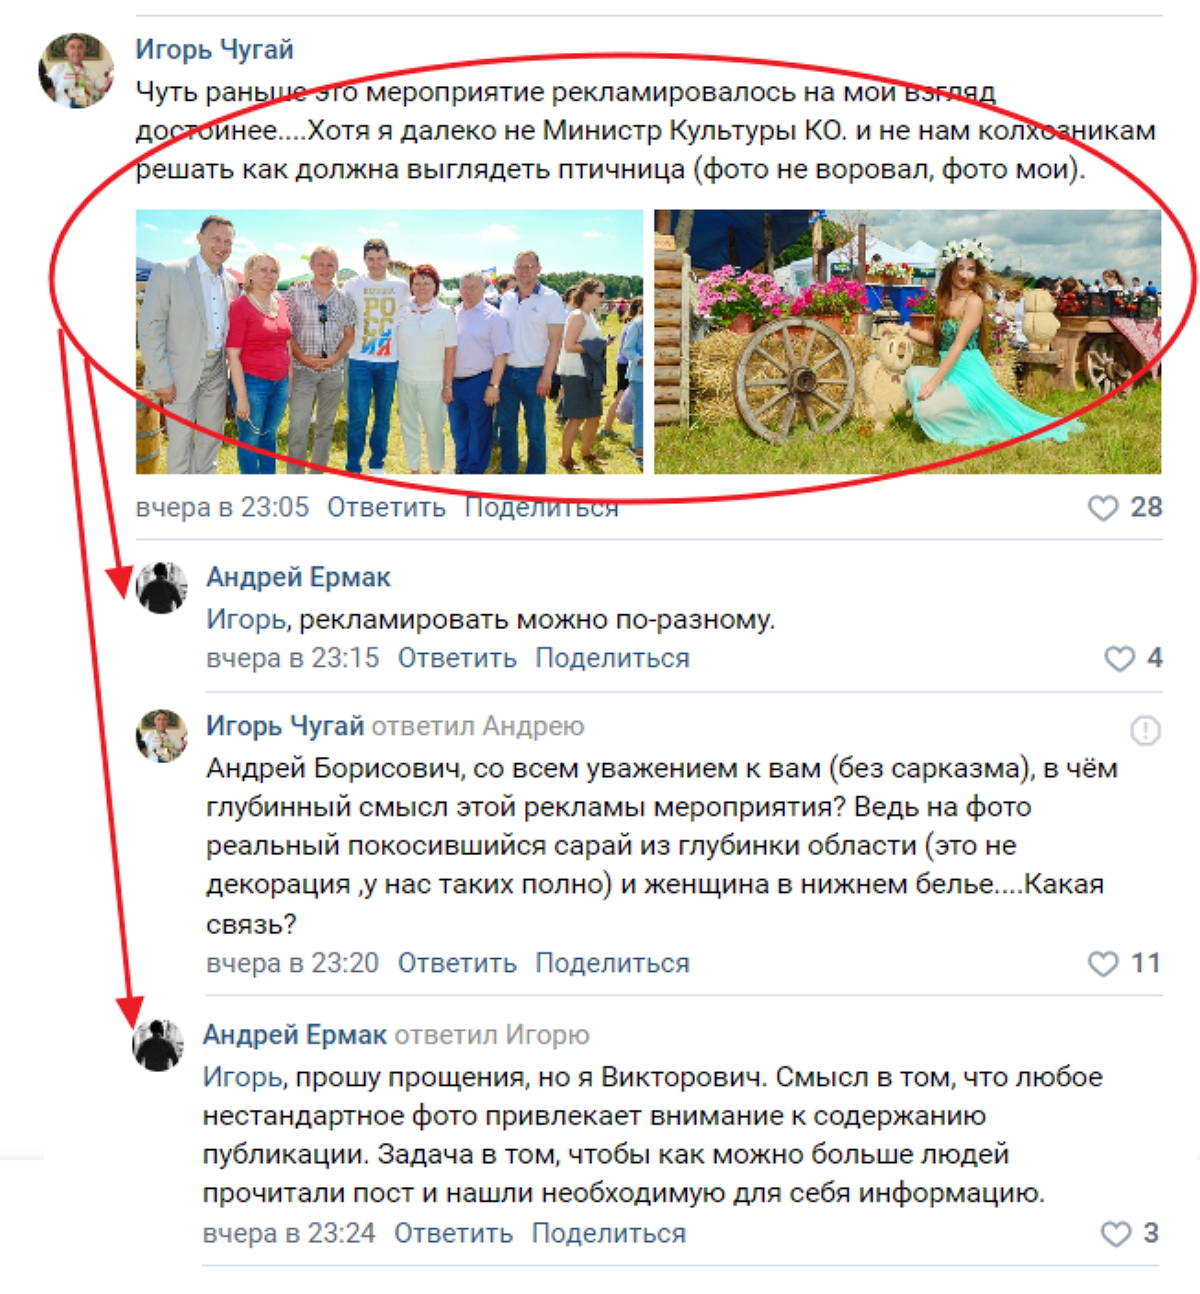 Калининградского министра культуры раскритиковали в Сети за публикацию фото полуголой девушки (ФОТО)